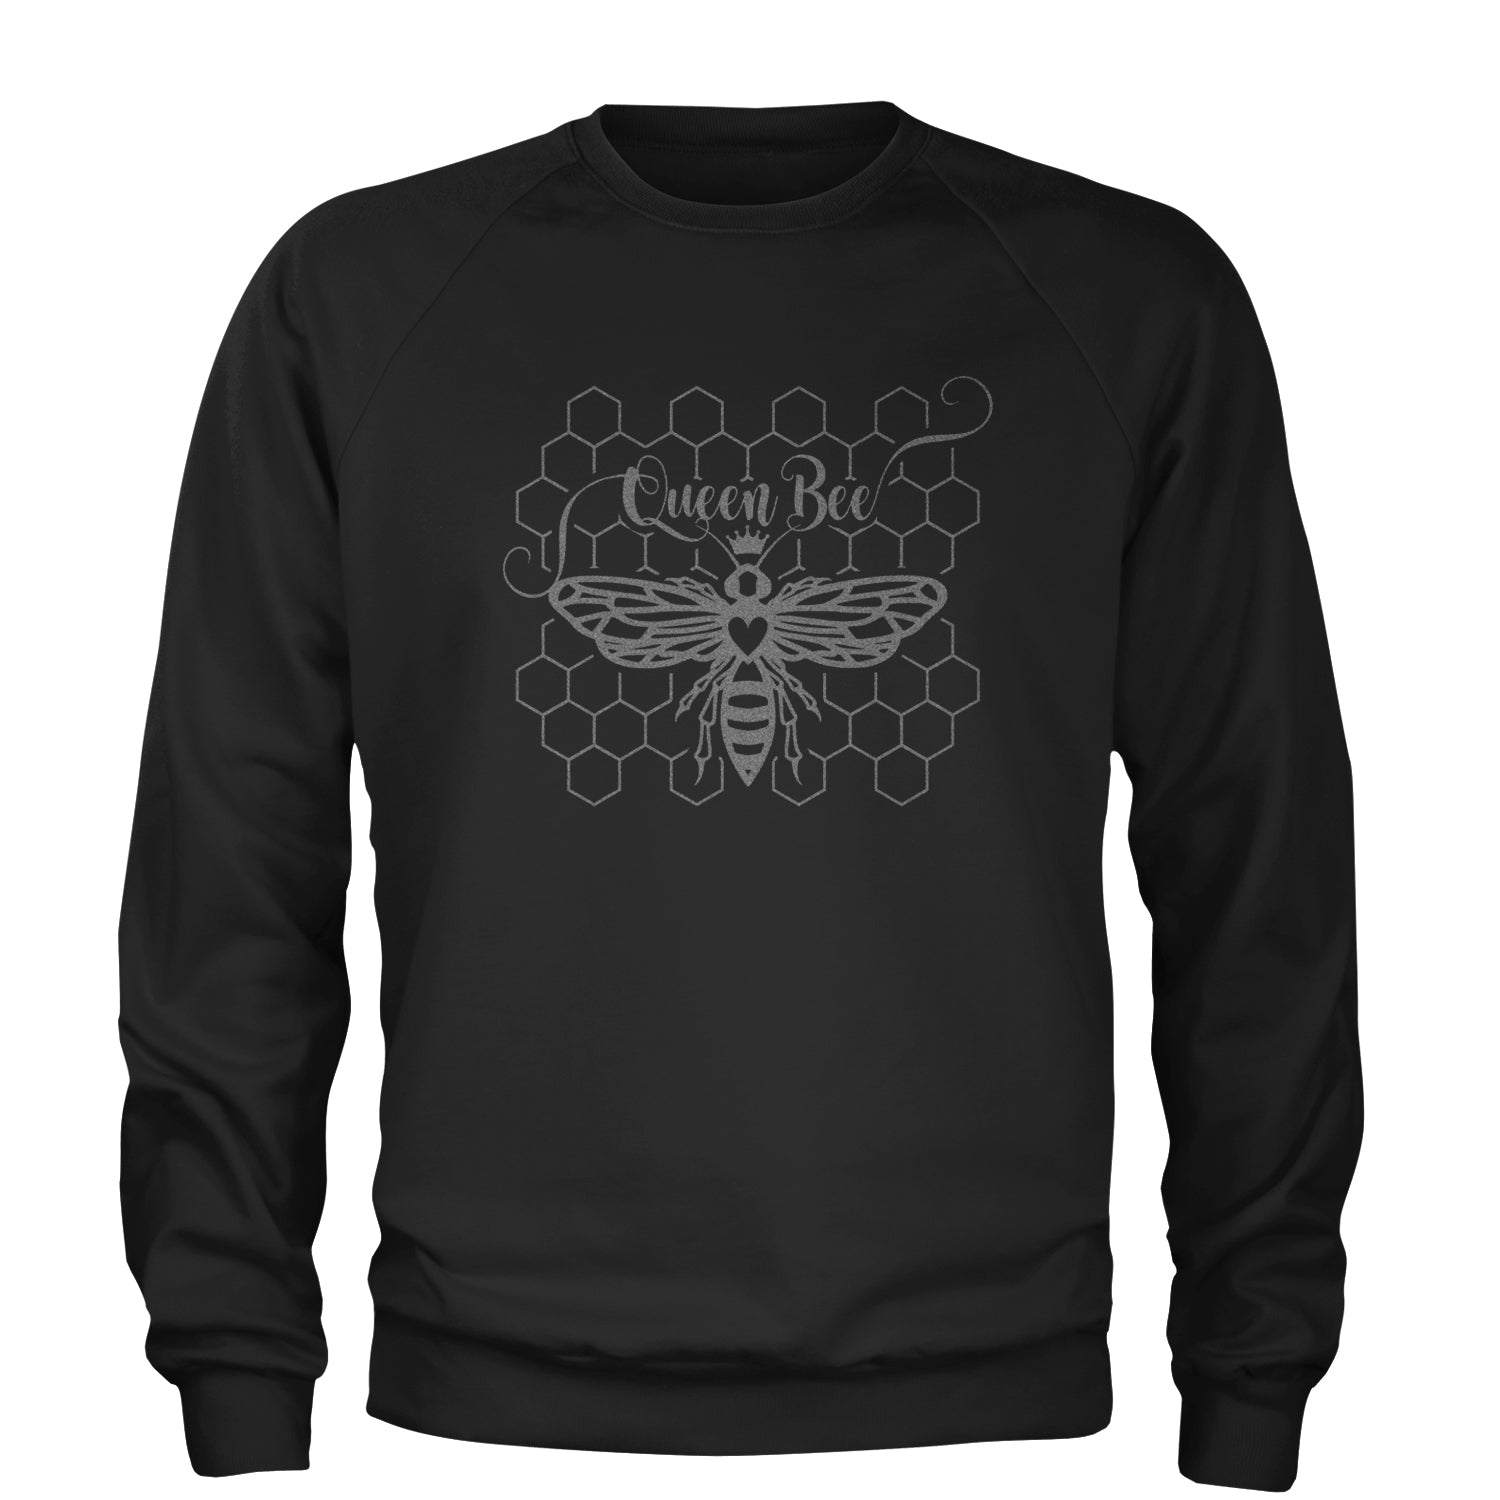 Beehive Queen Bee Metallic Silver Witty Bee Hive Design Adult Crewneck Sweatshirt